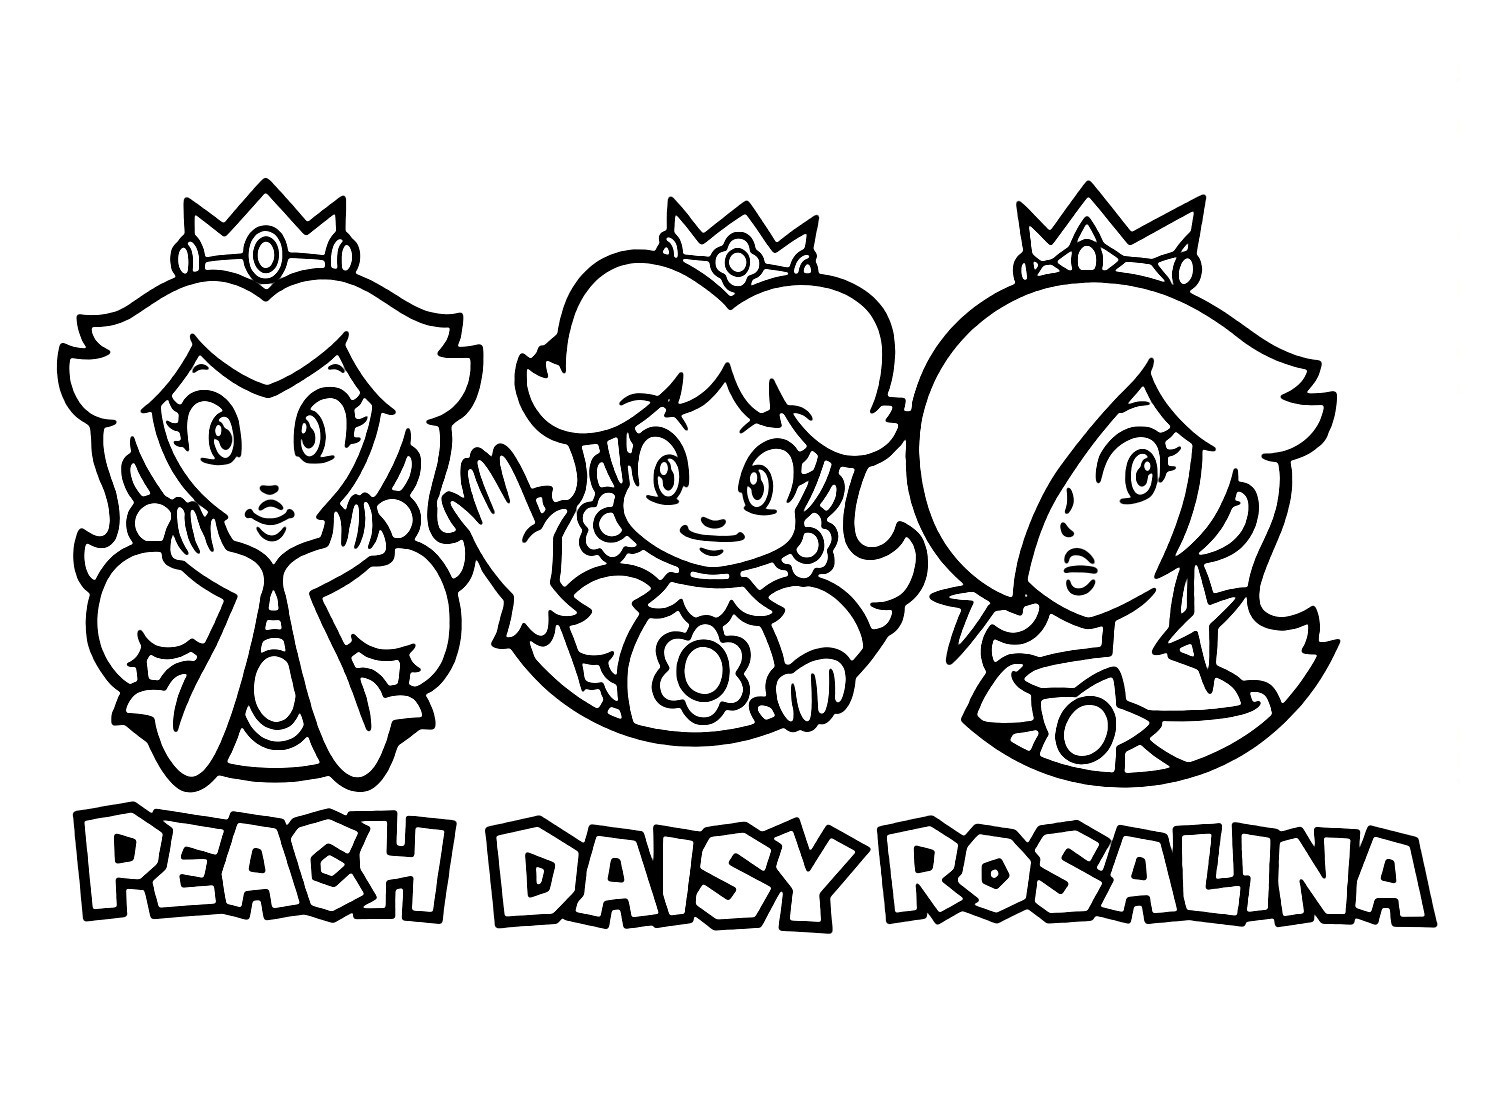 Prinses Peach, Daisy, Rosalina van Prinses Daisy